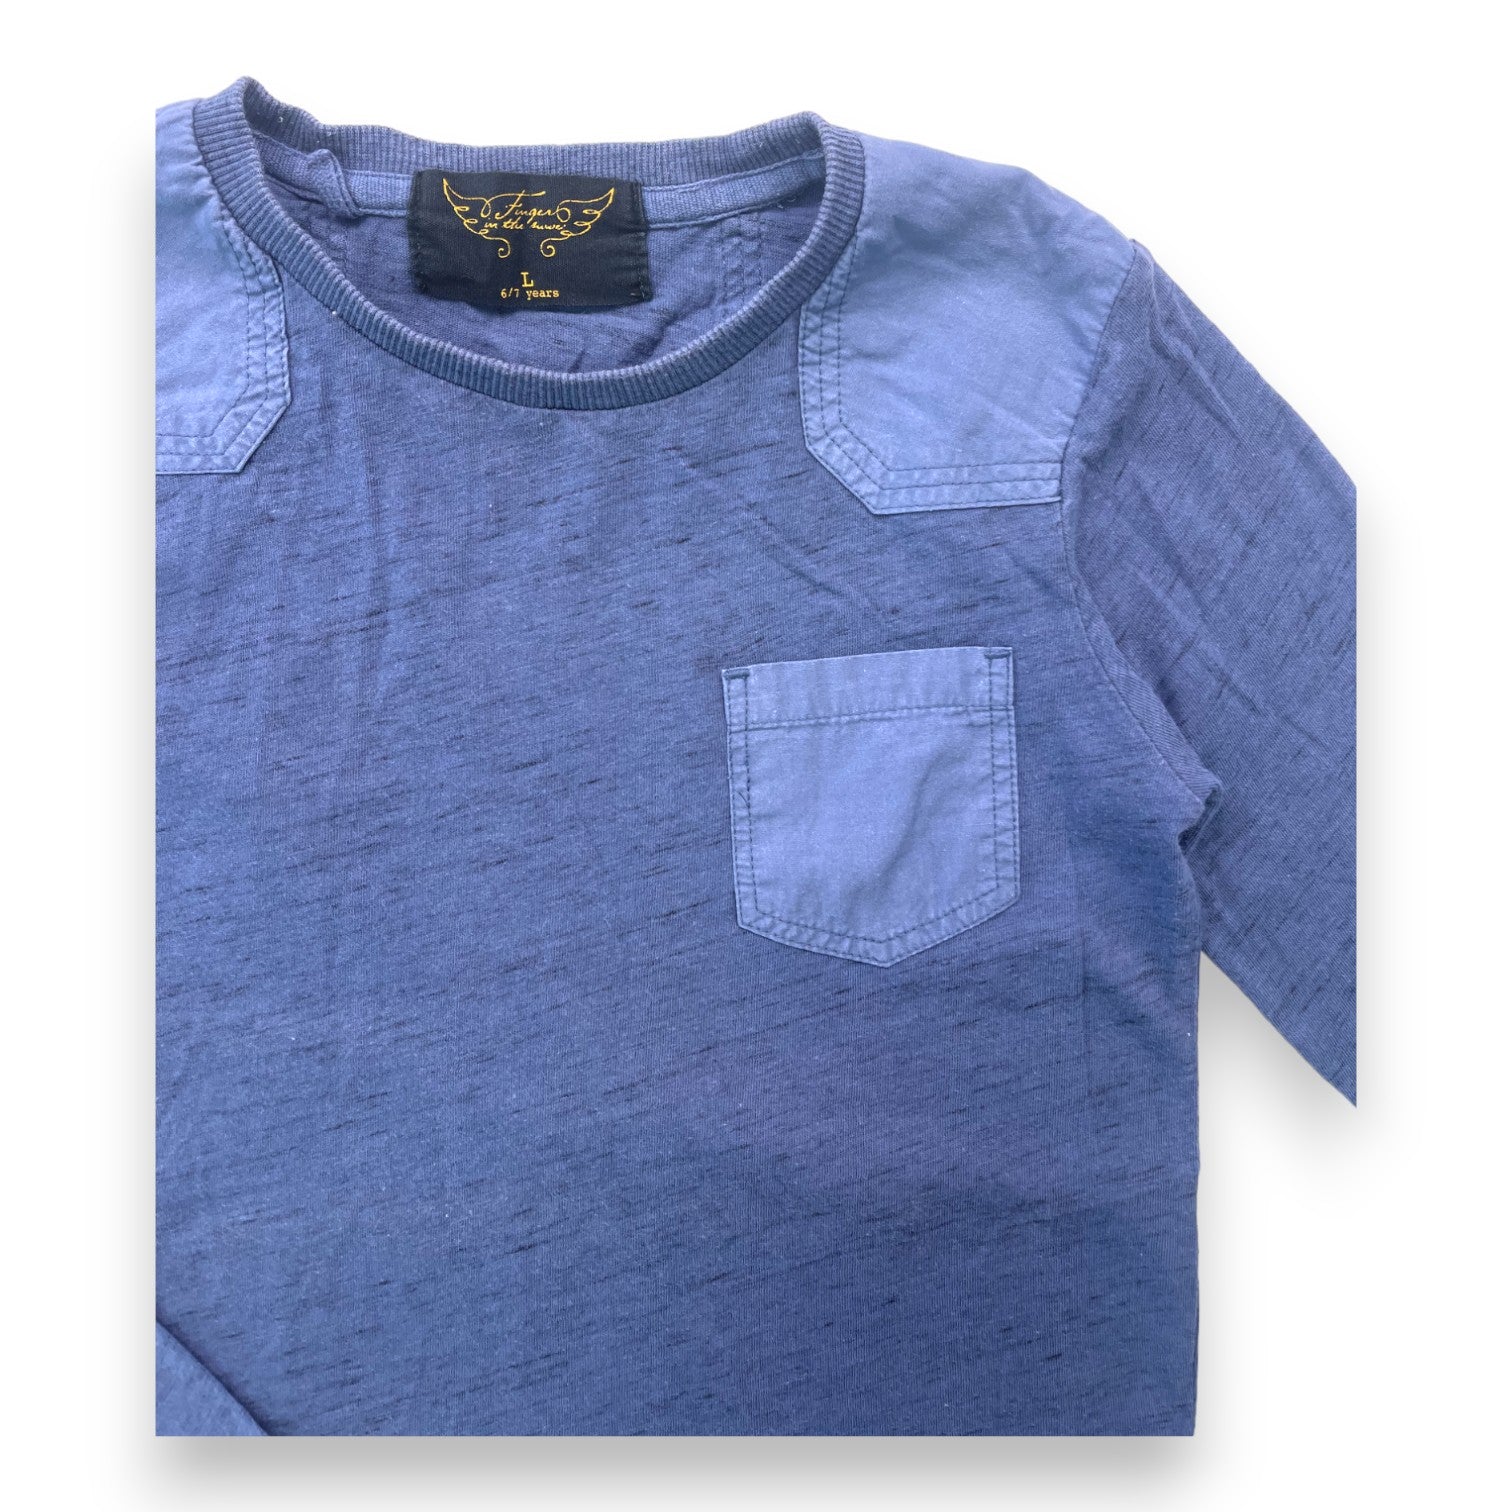 FINGER IN THE NOSE - T shirt manches longues bleu pétrole - 6/7 ans